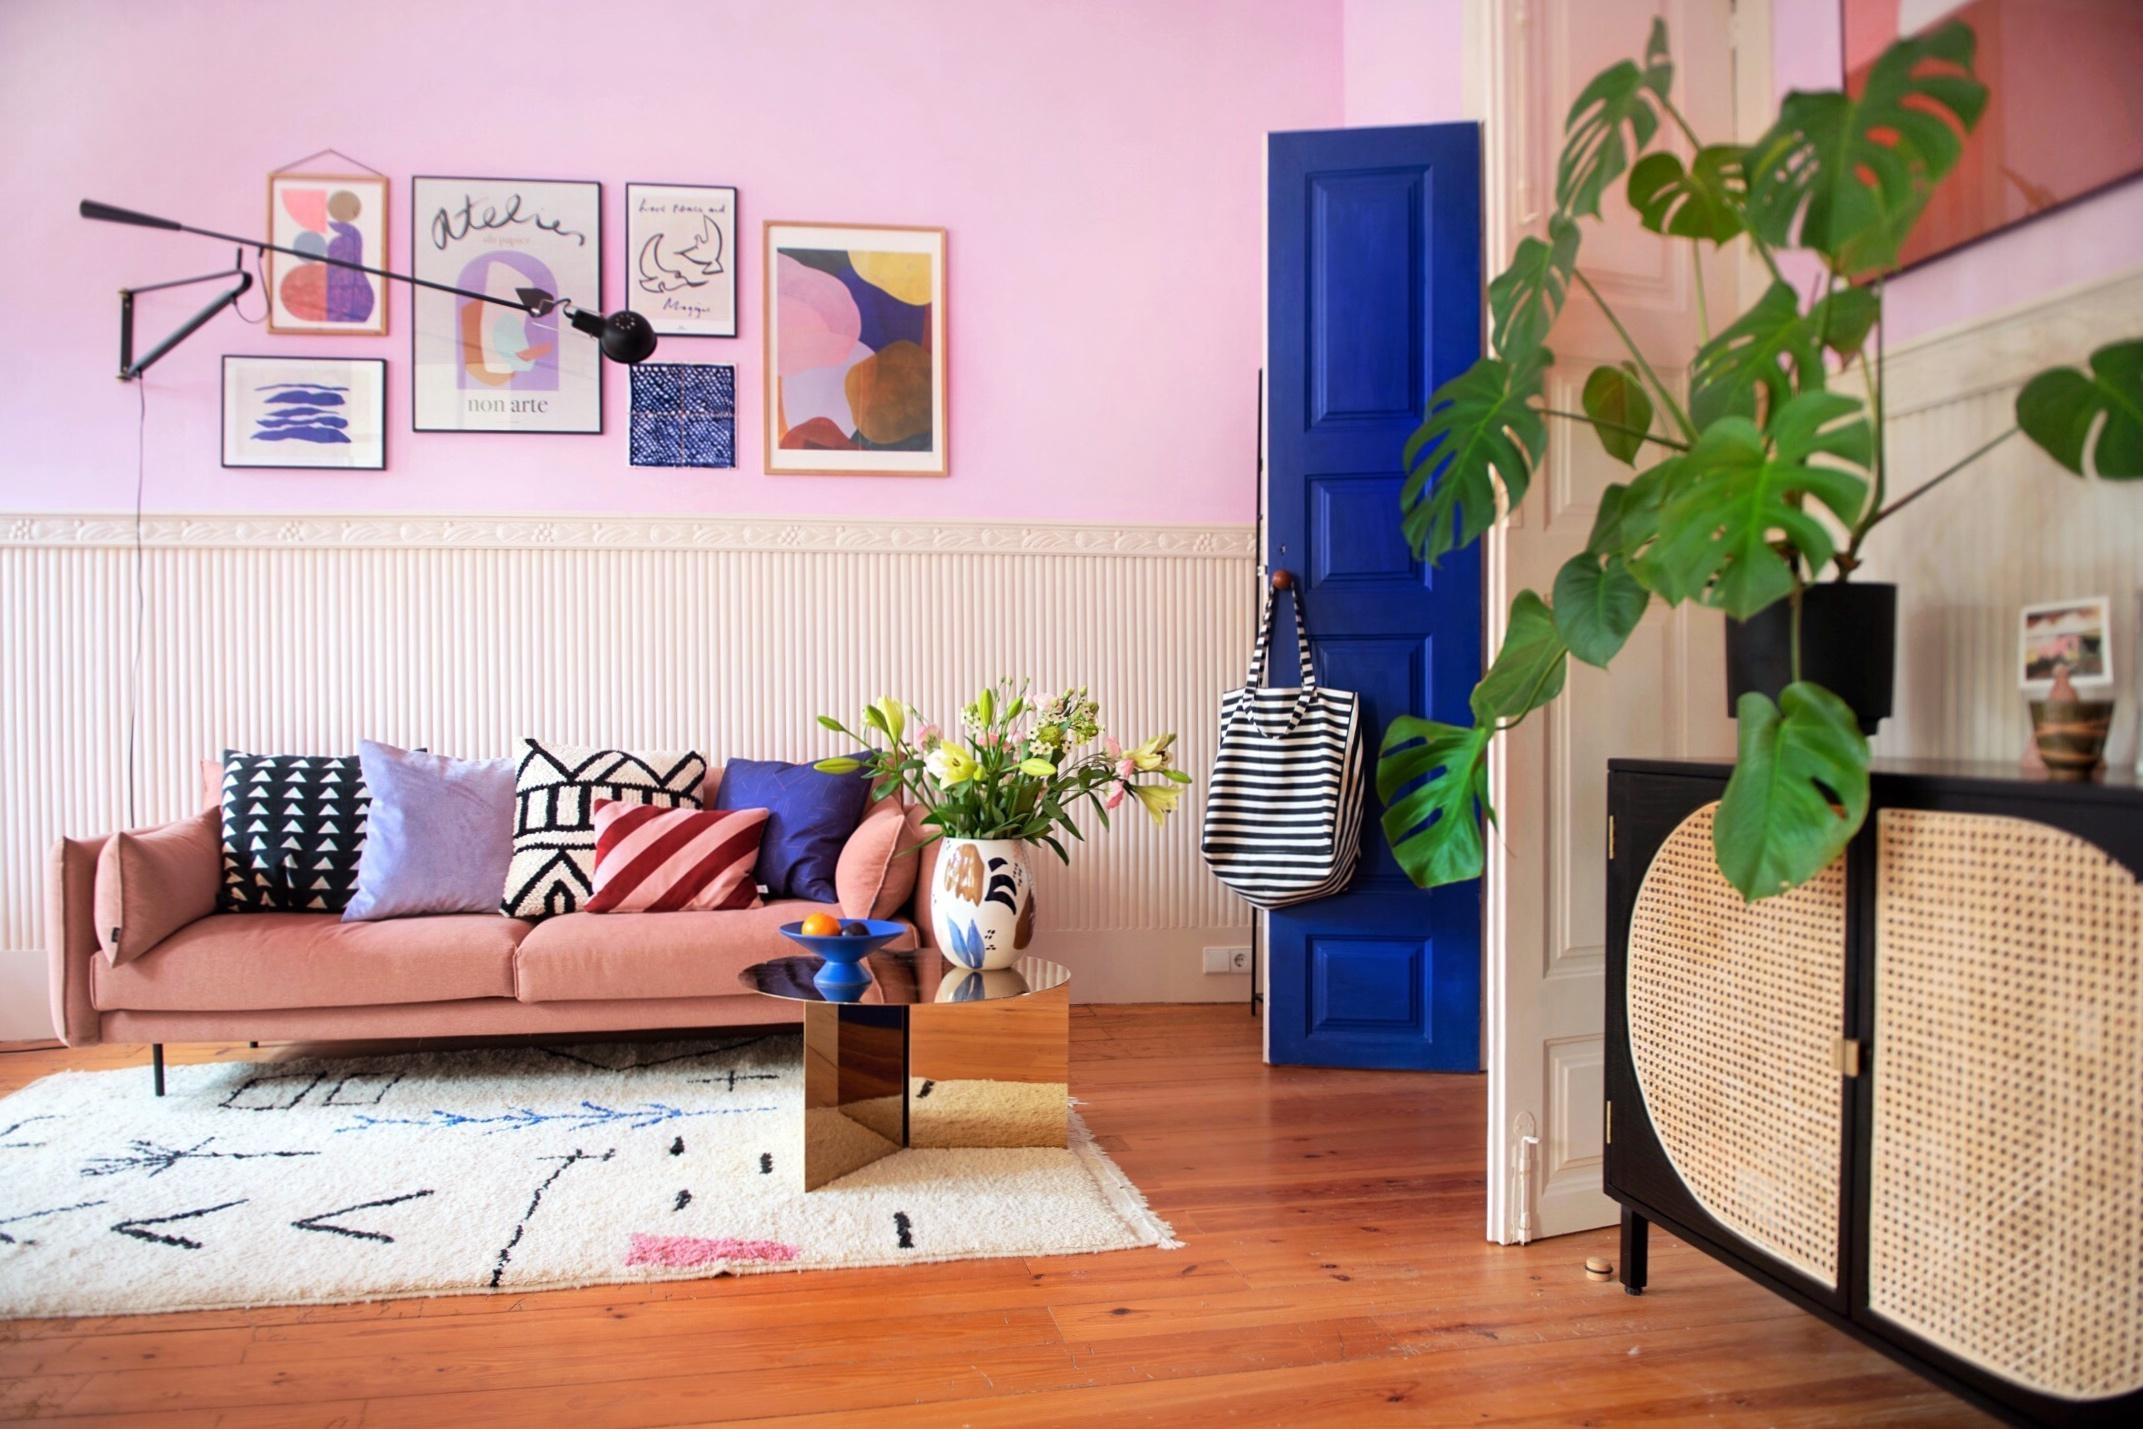 Unser Wohnzimmer in Portugal 💙💜
#Wohnzimmer #colorful #livingroom